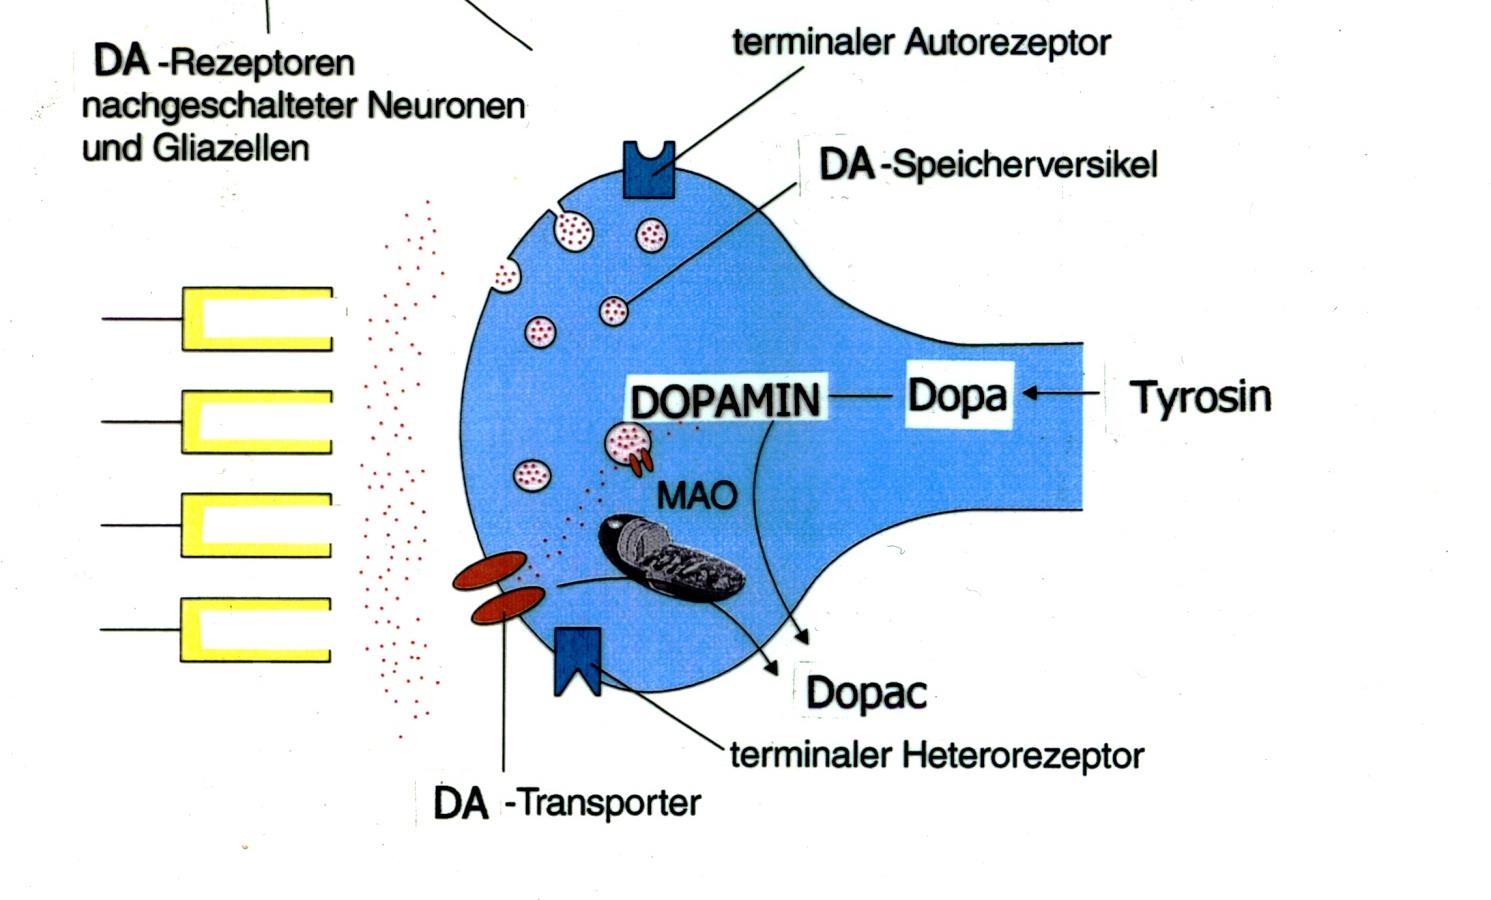 Vermutete Wirkung von Methylphenidat bei schneller, hochkonzentrierter Anflutung mißt Dopaminkonzentration im synaptischen Spalt Dopamin im synaptischen